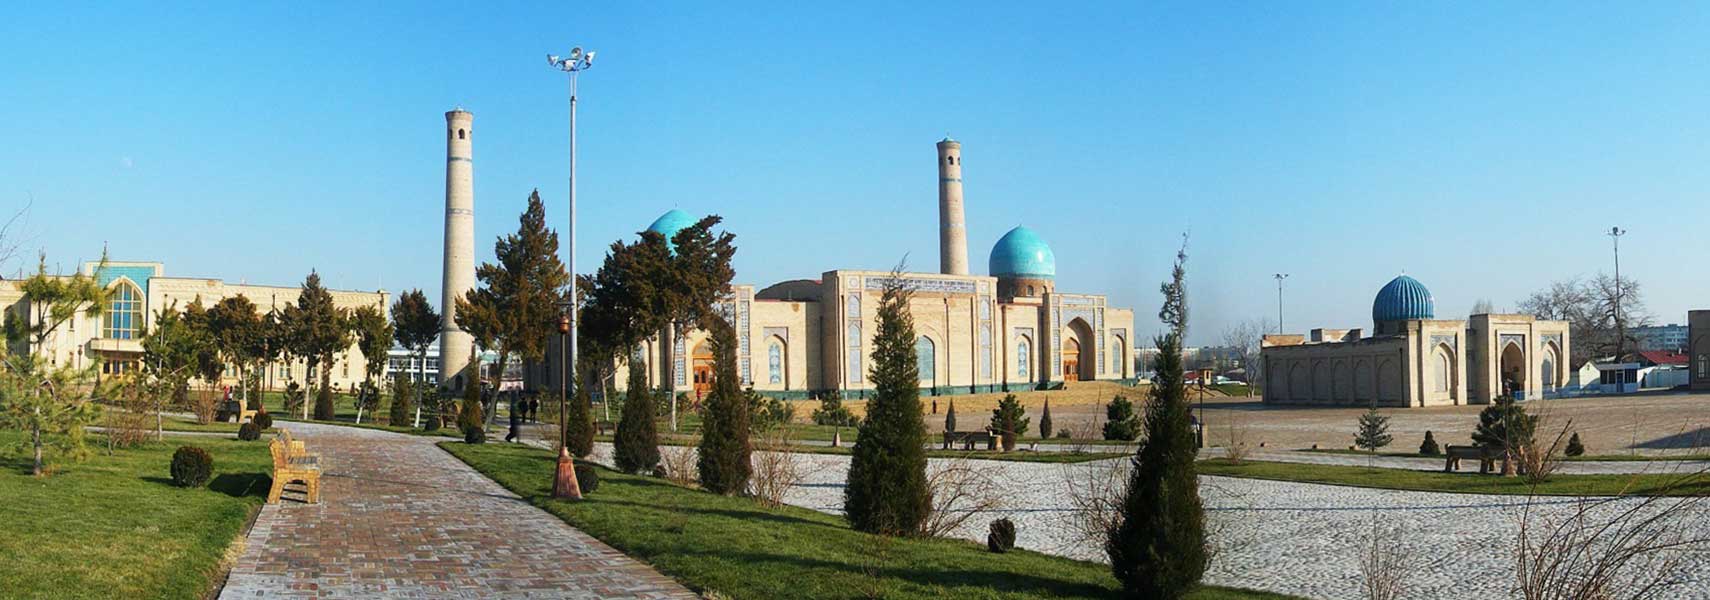 Khazrati Imam Architectural Complex, Tashkent, Uzbekistan